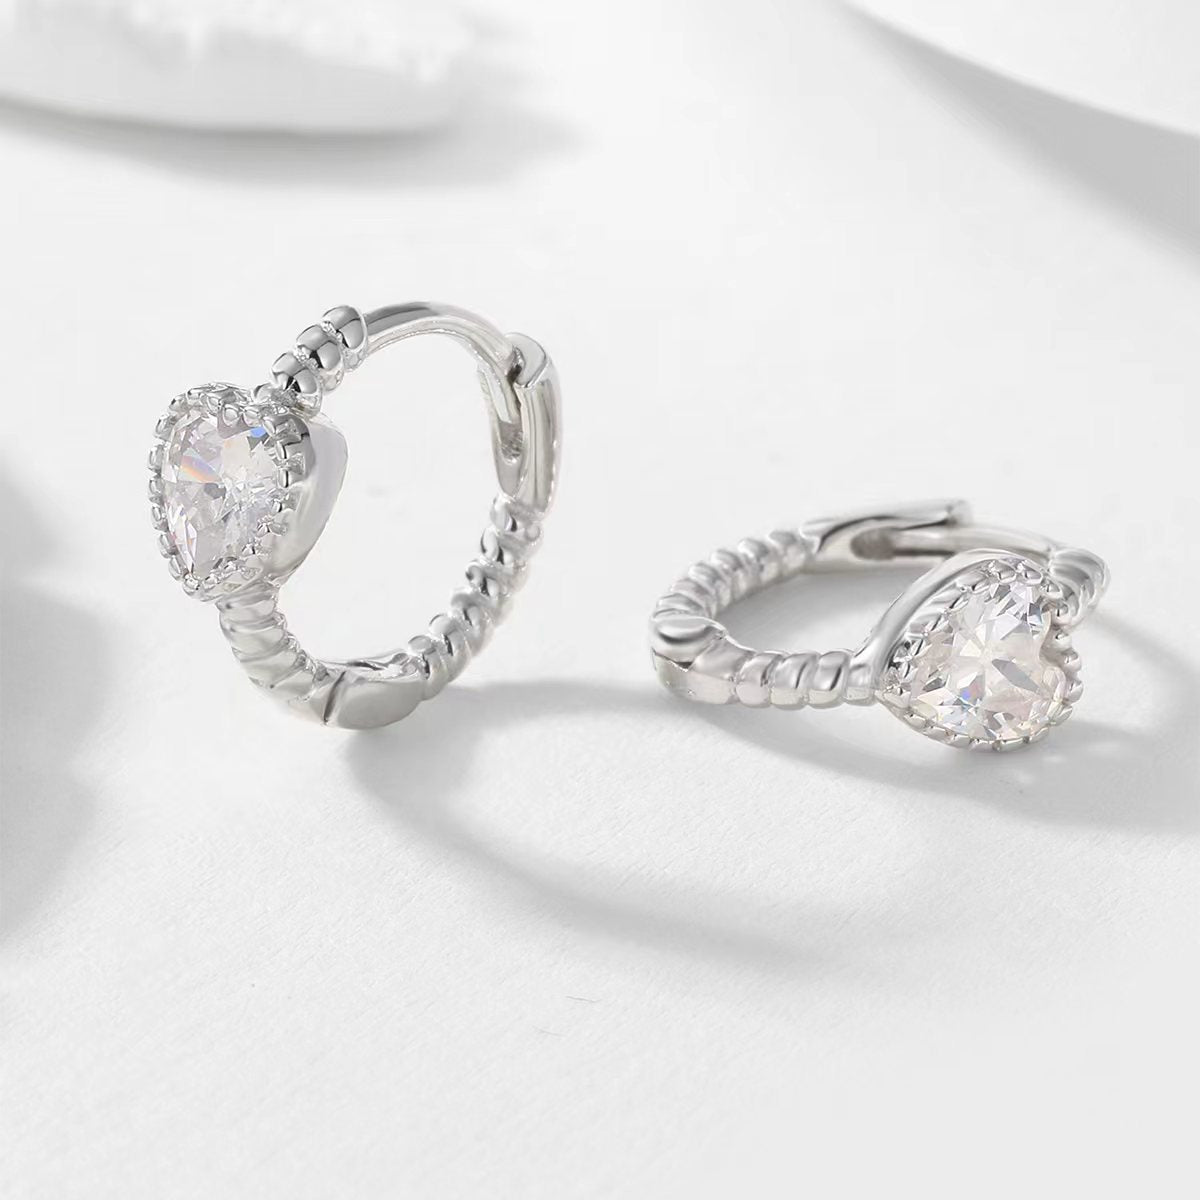 1 Pair Elegant Cute Sweet Heart Shape Inlay Sterling Silver Zircon Earrings